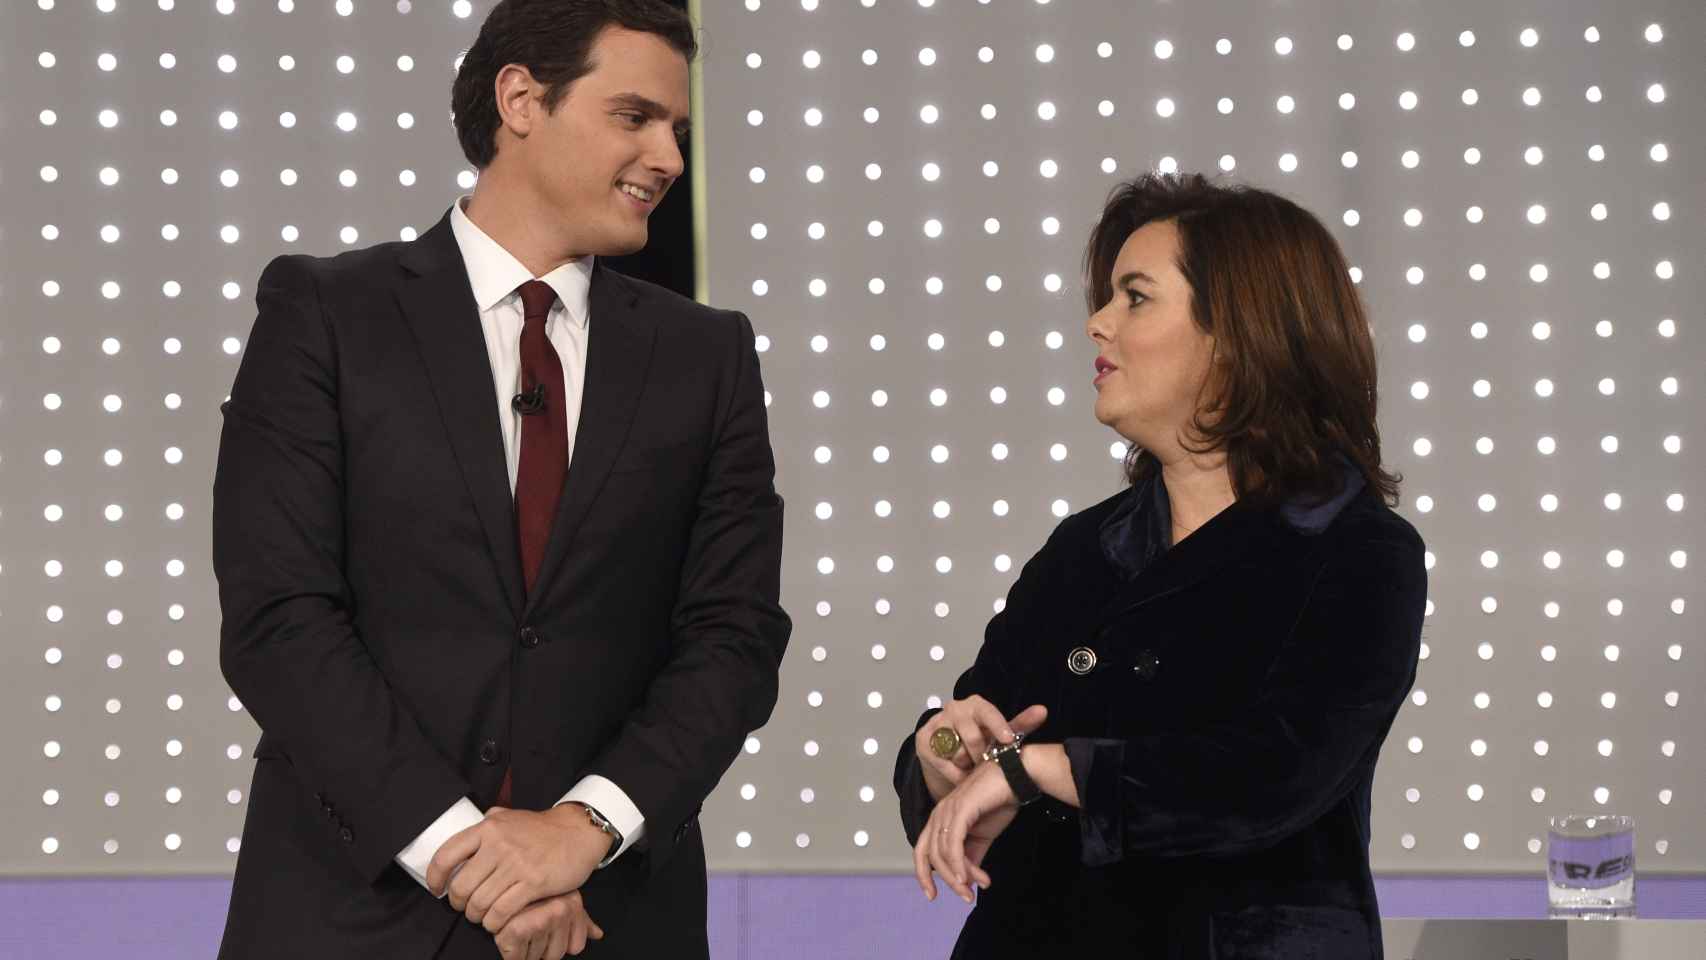 Soraya señala su reloj en el debate del 7D junto a Albert Rivera